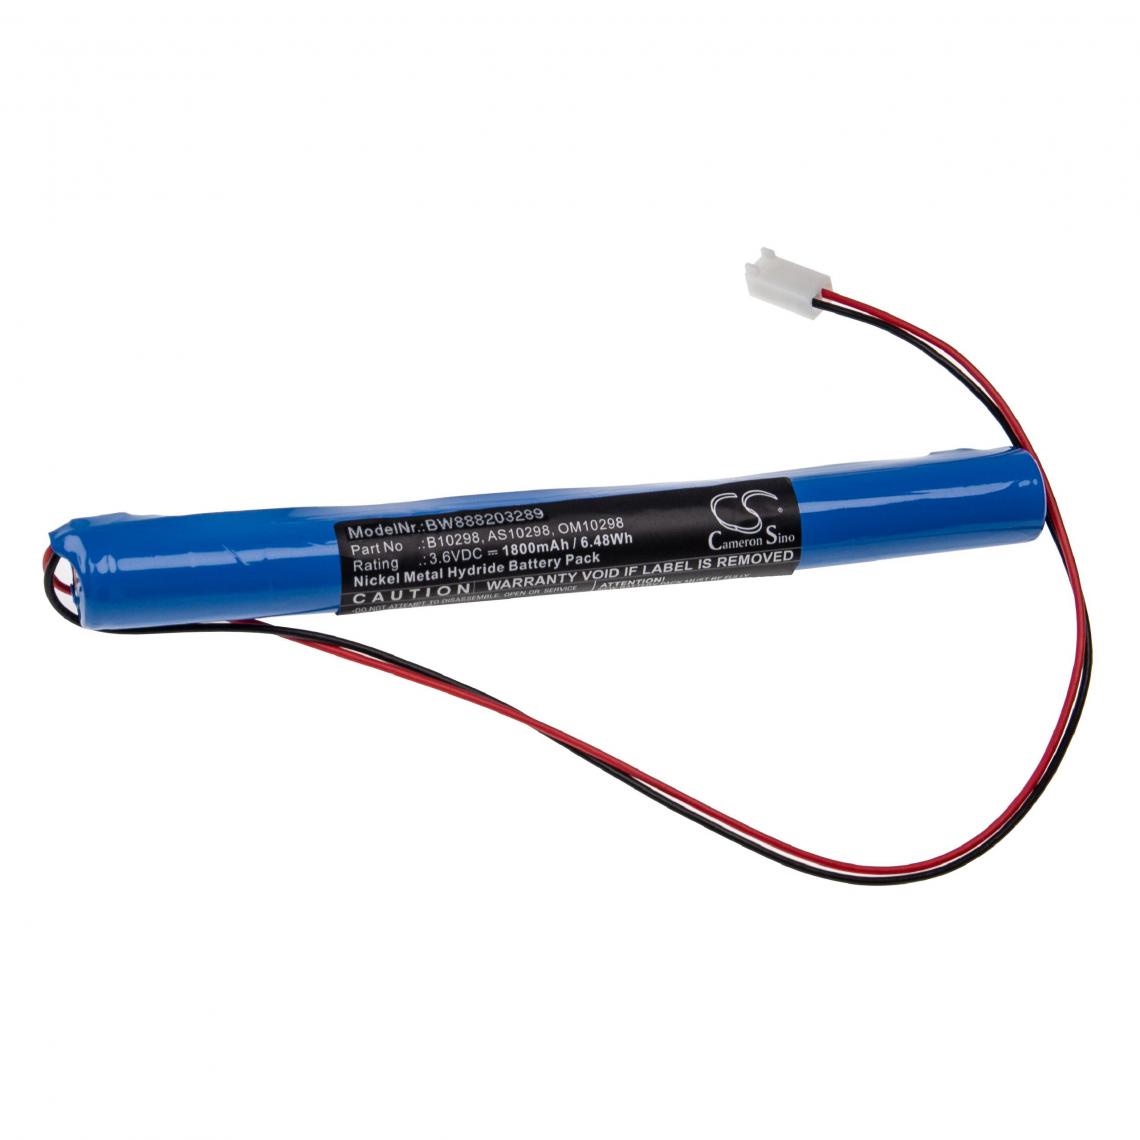 Vhbw - vhbw Batterie compatible avec Philips ECG (électrocardiographie) 4765A appareil médical (1800mAh, 3,6V, NiMH) - Piles spécifiques